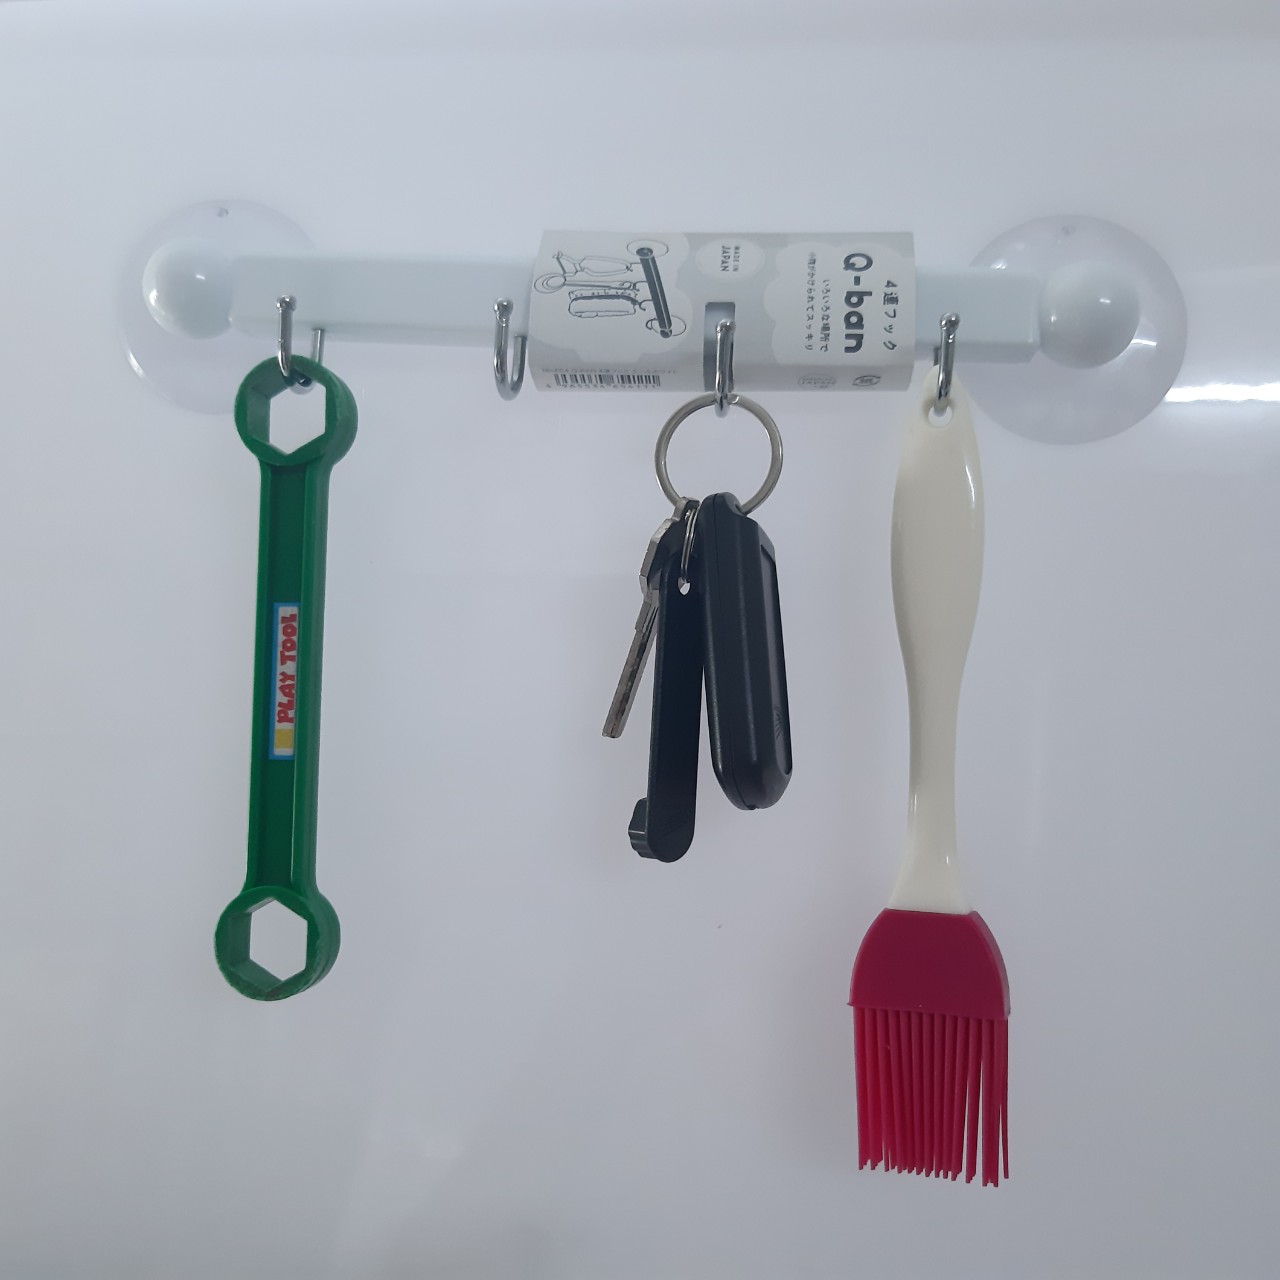 Thanh nhựa 4 móc treo đồ núm hít chân không, dùng để treo các loại vật dụng nhỏ, nhẹ trong phòng tắm, nhà bếp - nội địa Nhật Bản